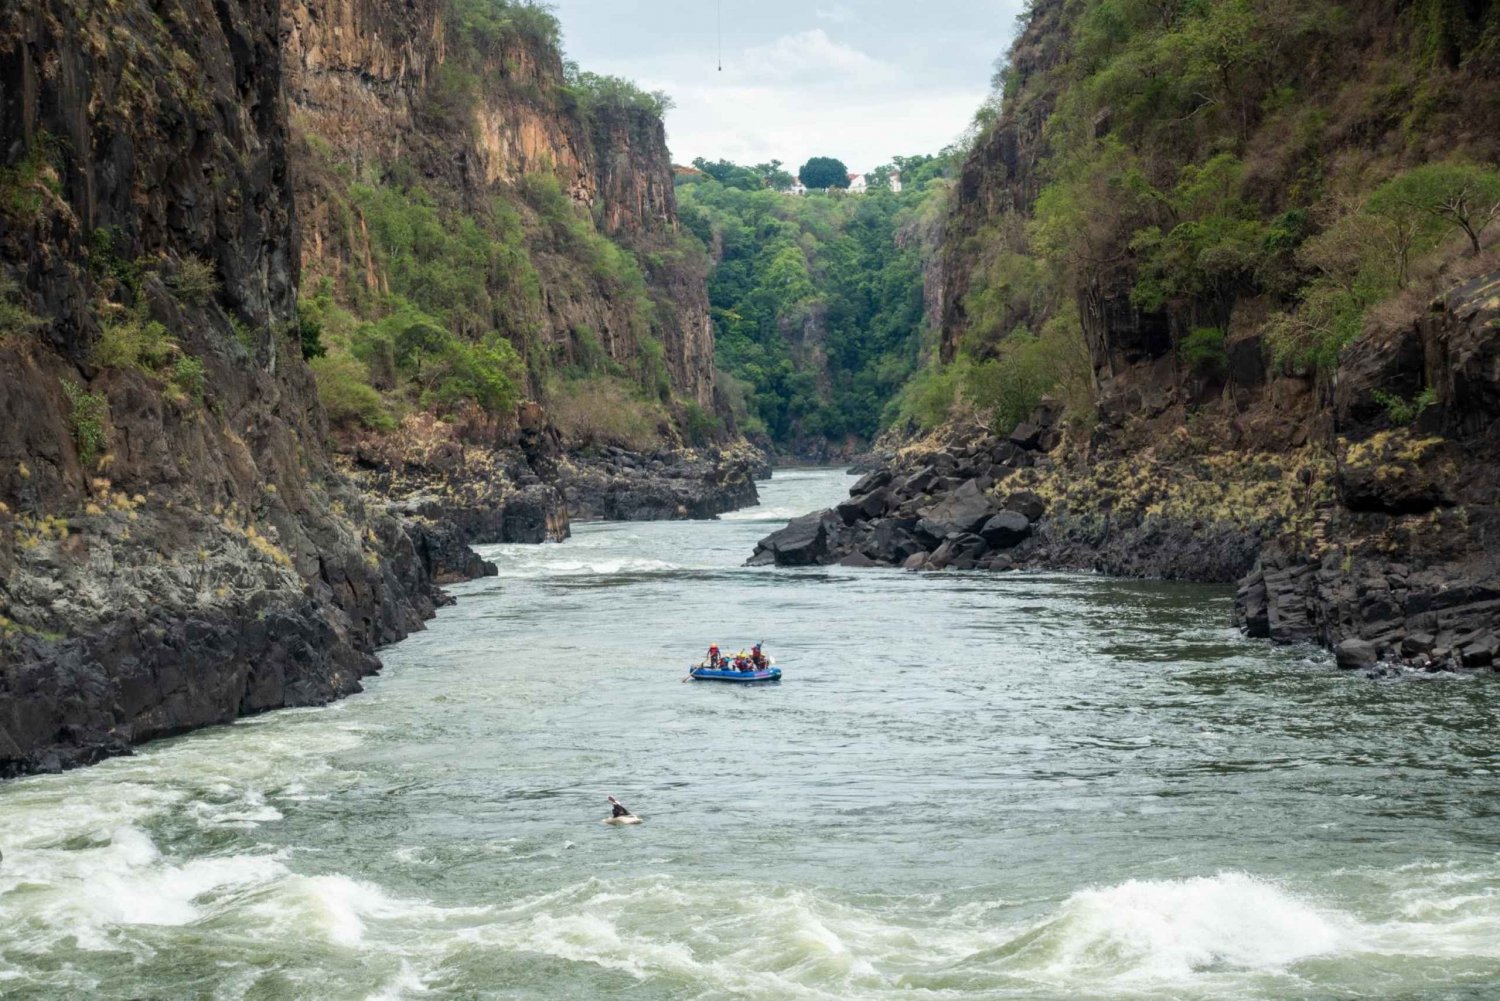 Zambezi River: Full Day Whitewater Rafting Experience